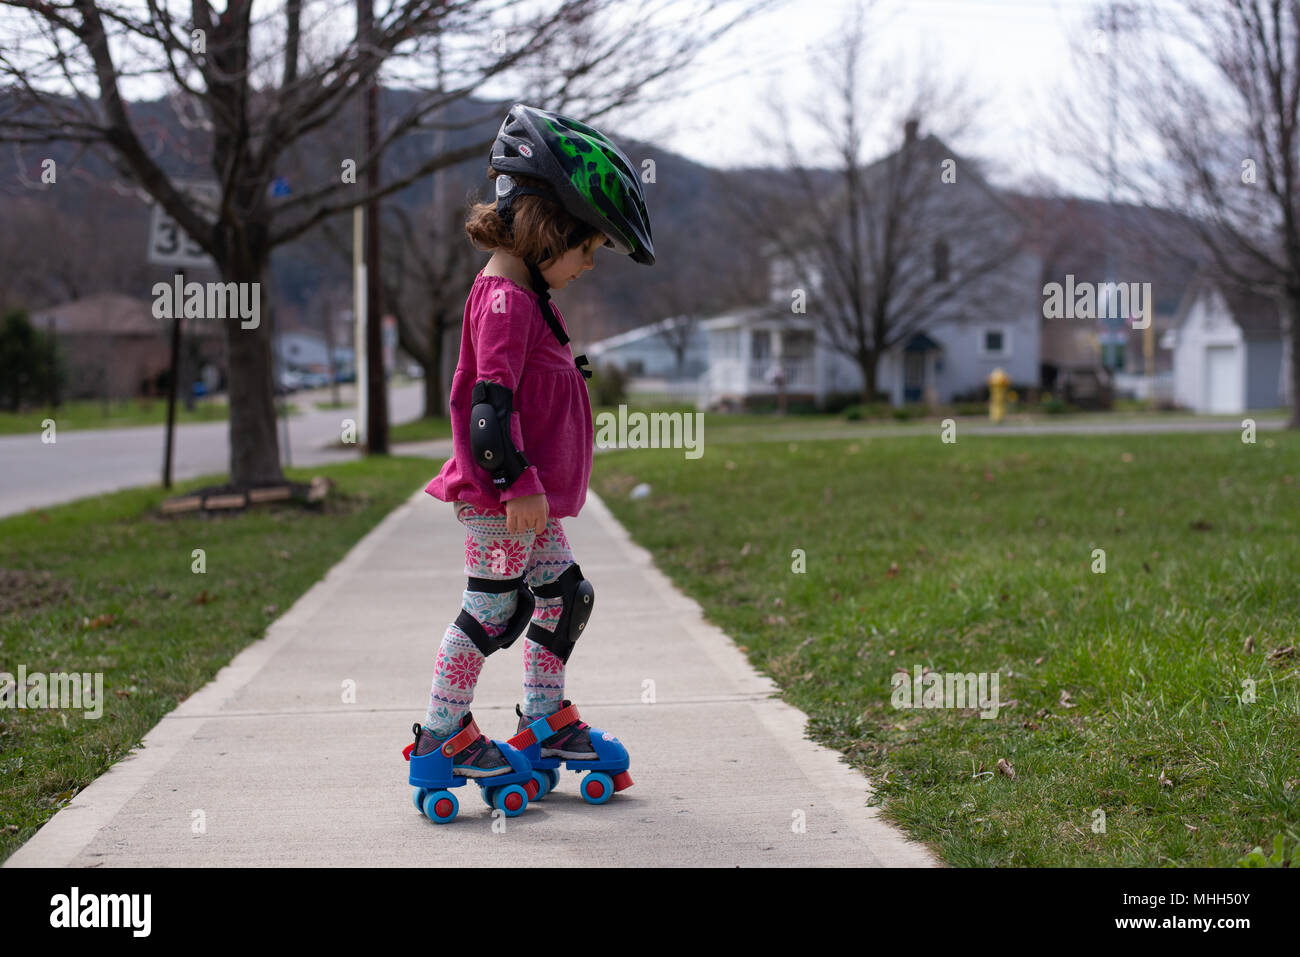 Ein kleines Mädchen trägt einen Helm, Knie- und Ellenbogenschützer während Skaten auf einem Bürgersteig an einem sonnigen Frühlingstag. Stockfoto